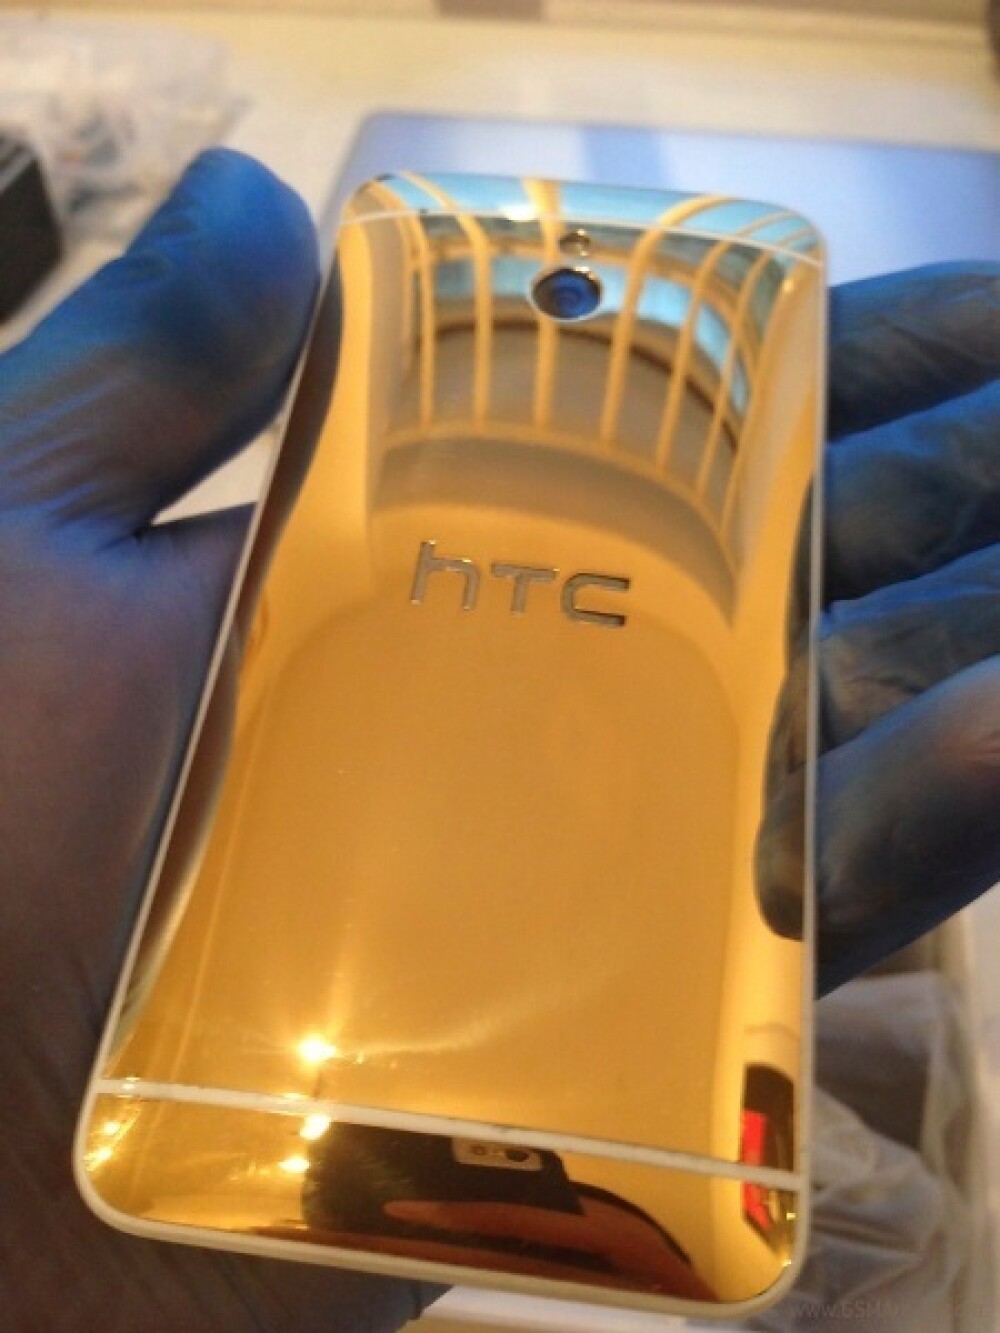 HTC One Mini Gold Edition. Cum arata telefonul de lux care costa 3000 de dolari - Imaginea 4